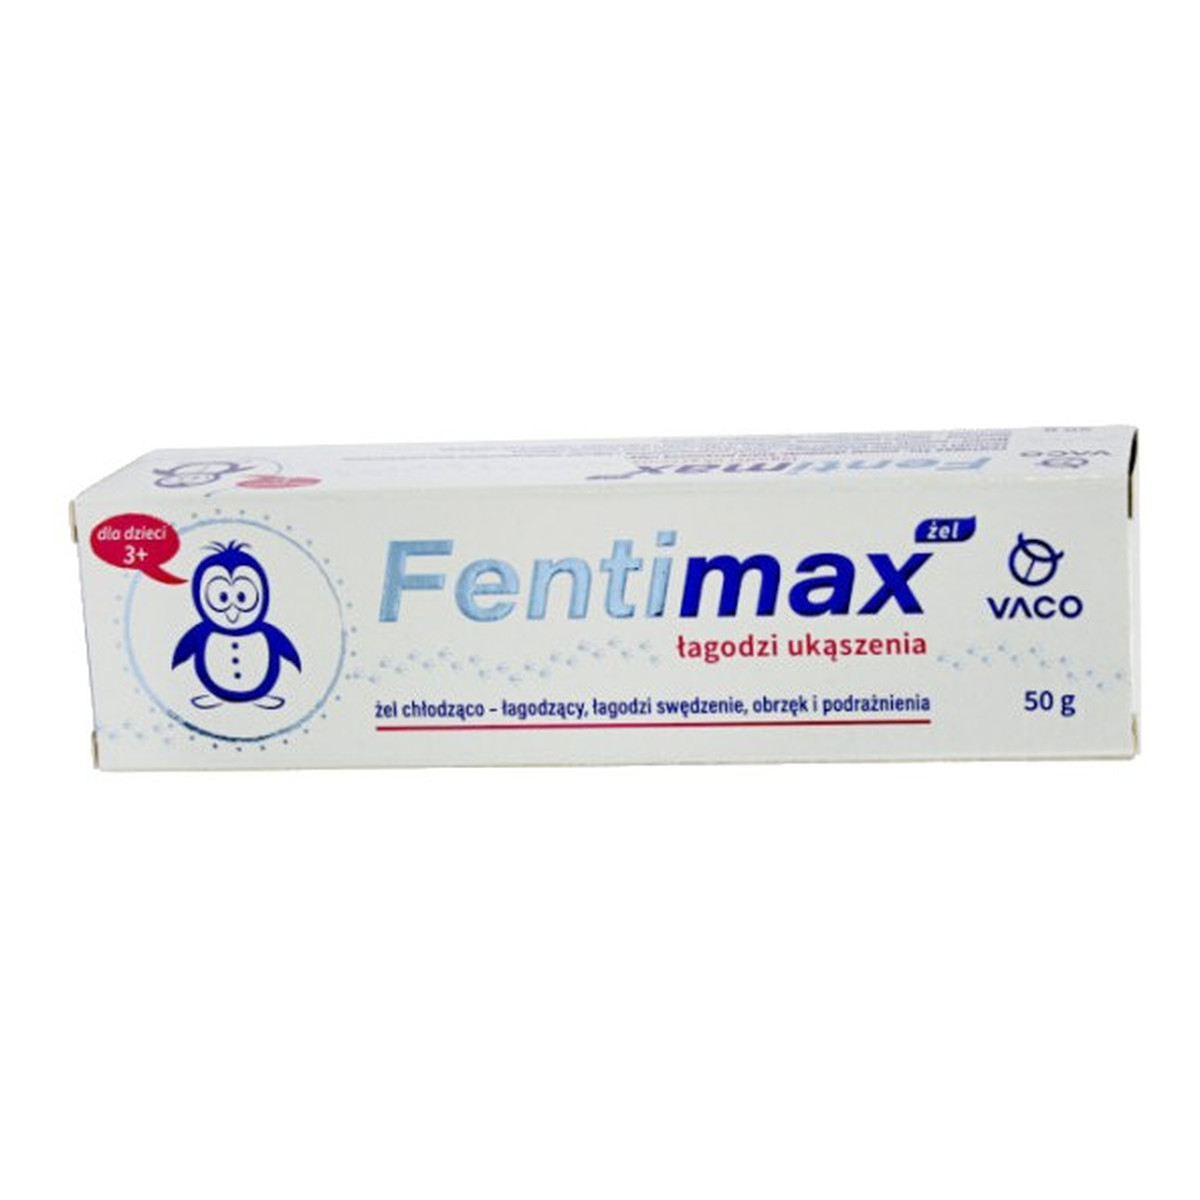 Vaco FentiMAX Żel chłodząco - łagodzący ukąszenia (dla dzieci 3+) 50ml